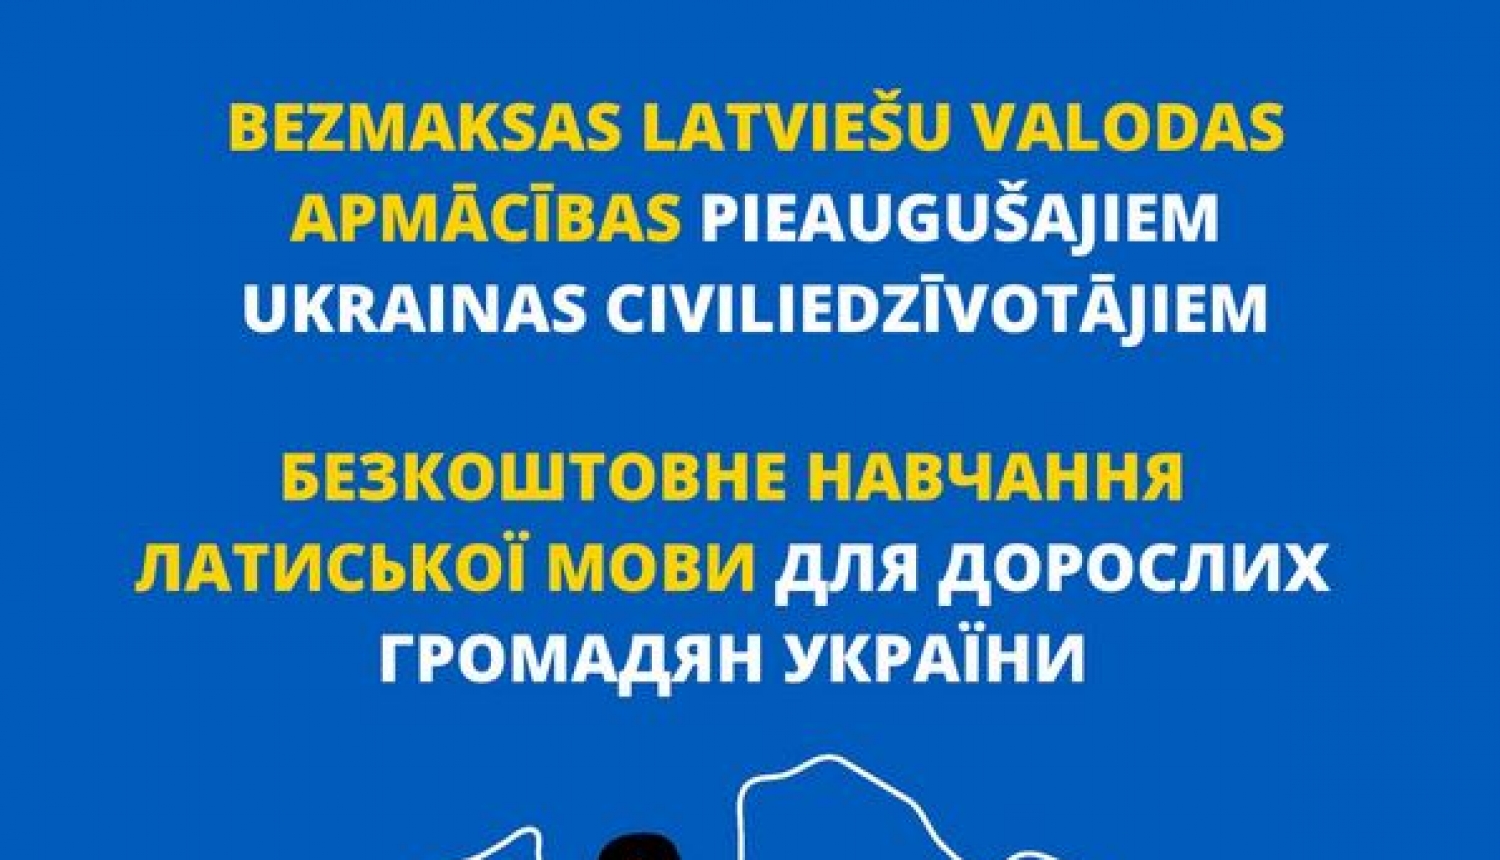 Piesakieties BEZMAKSAS latviešu valodas apmācībām pieaugušajiem Ukrainas civiliedzīvotājiem! (LV/UA)